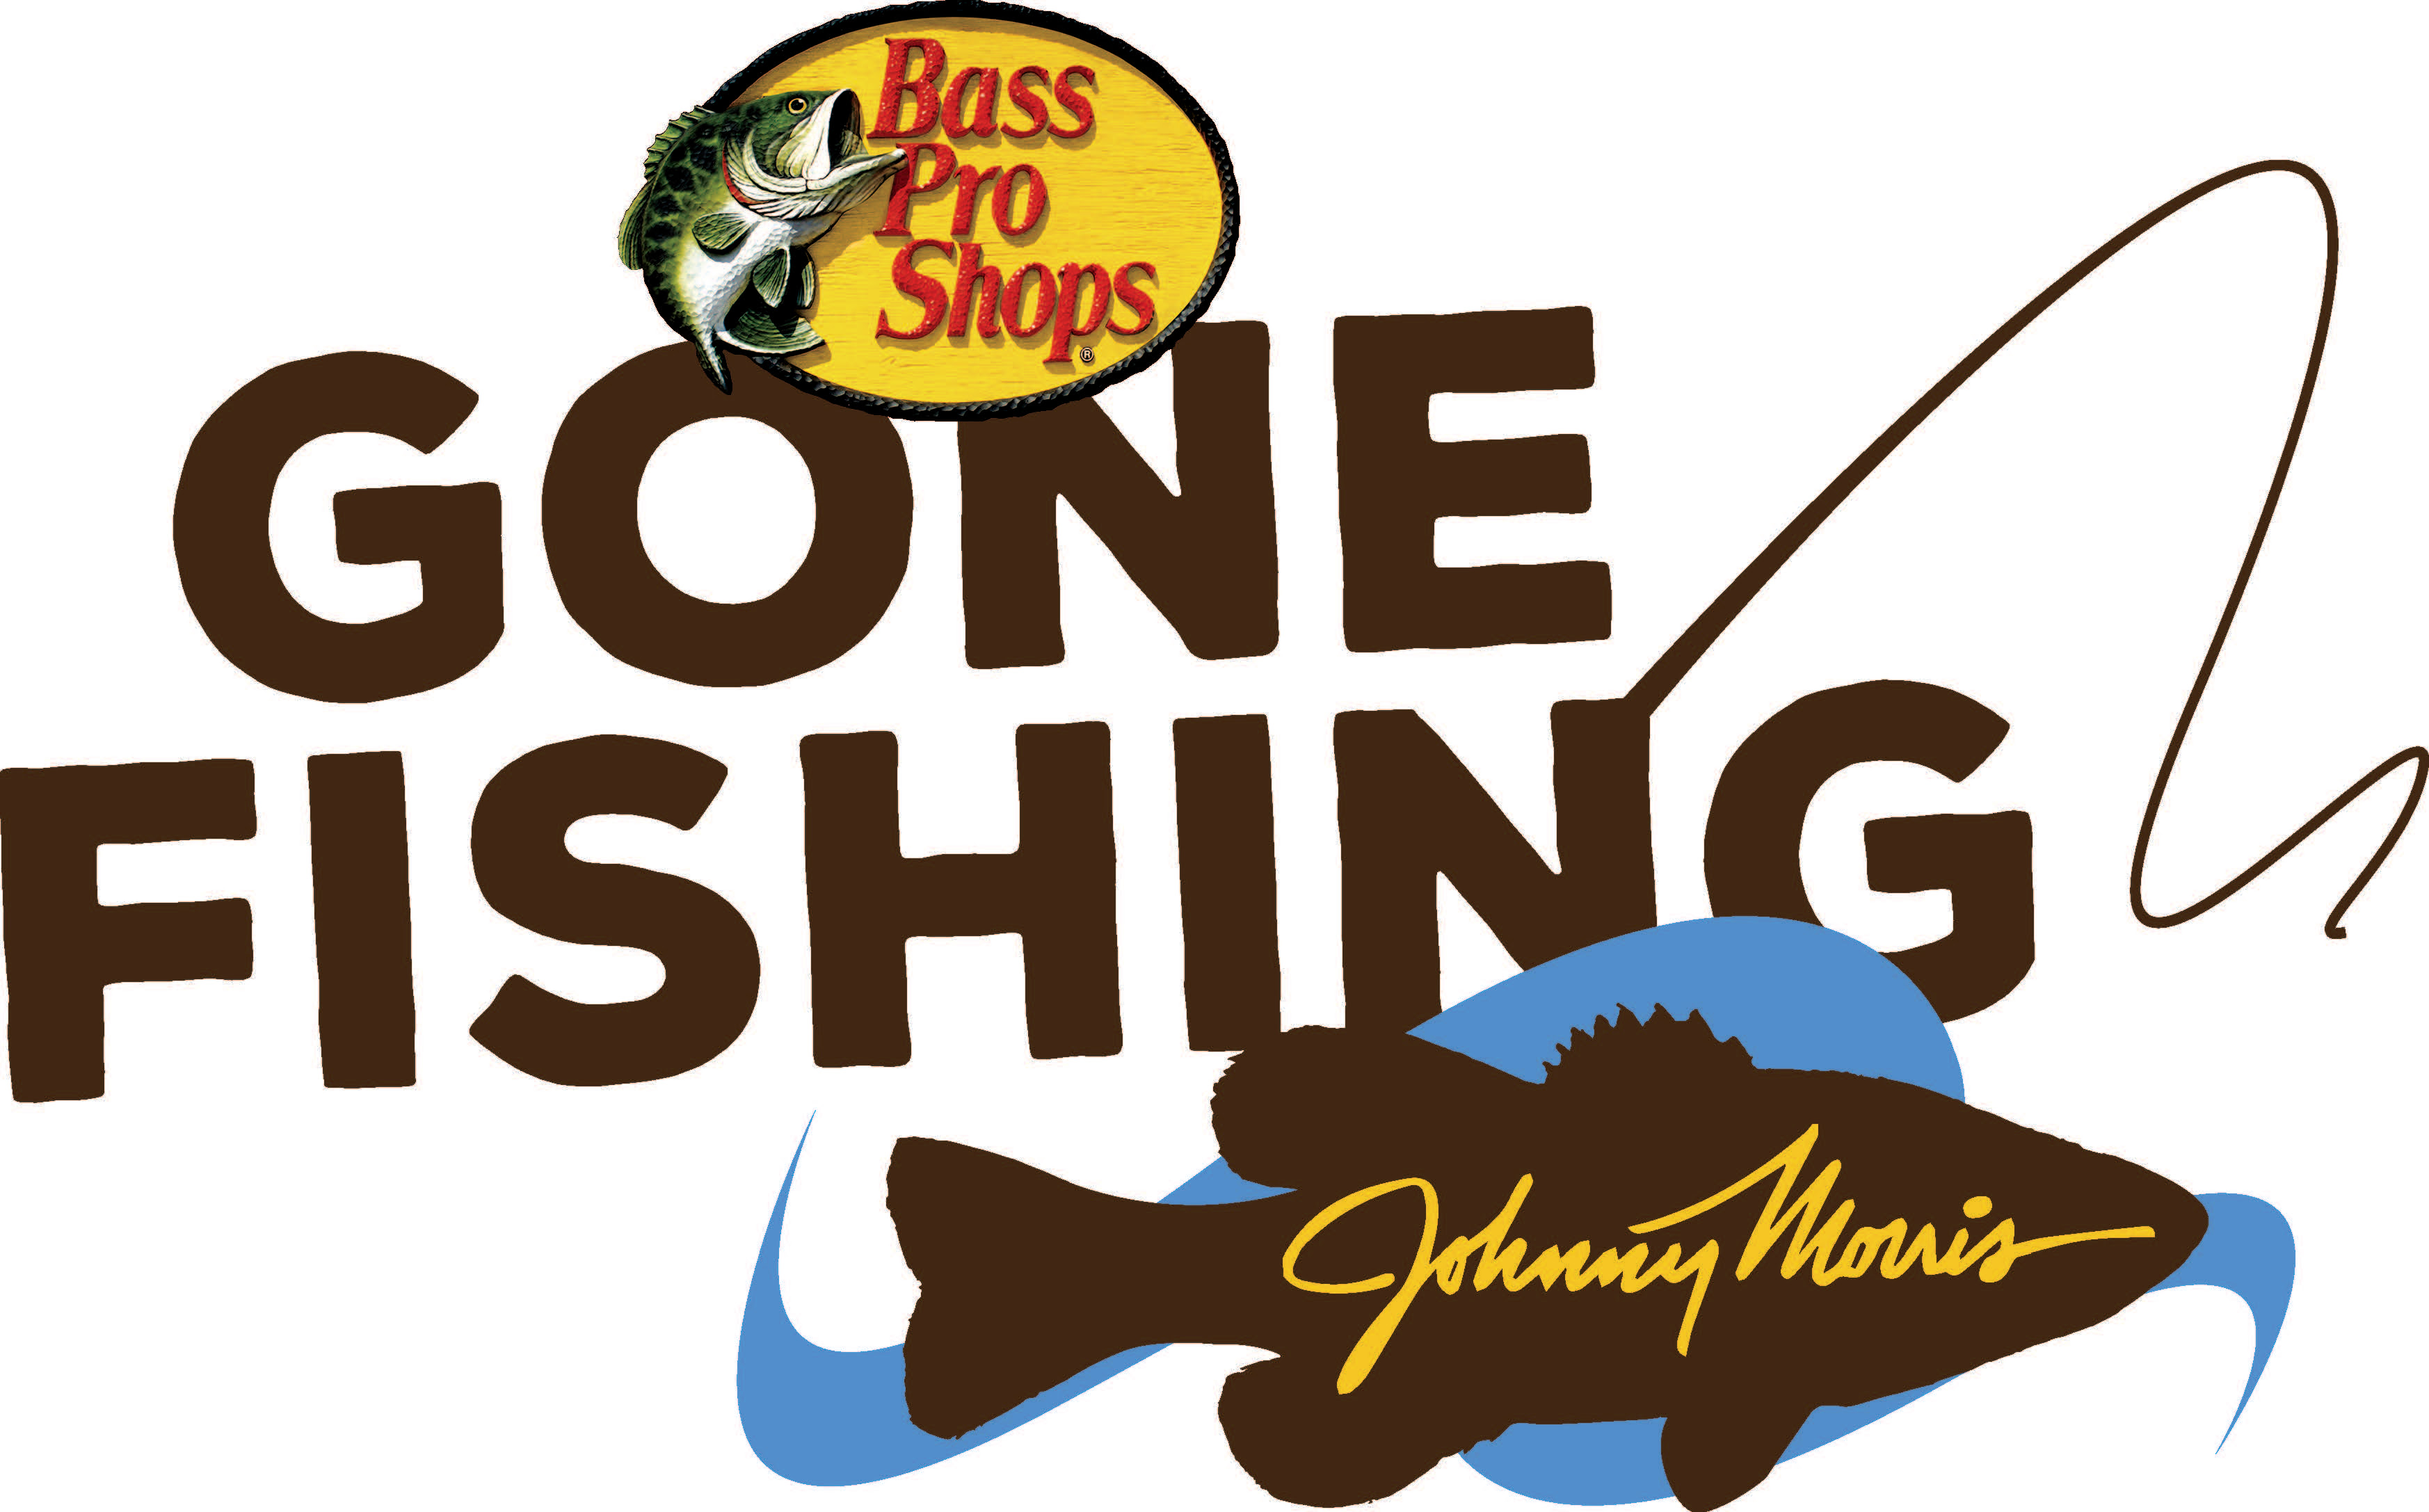 Gone Fishing. Gone Fishing логотип. Pro Bass Fishing. Bass shop Fishing.